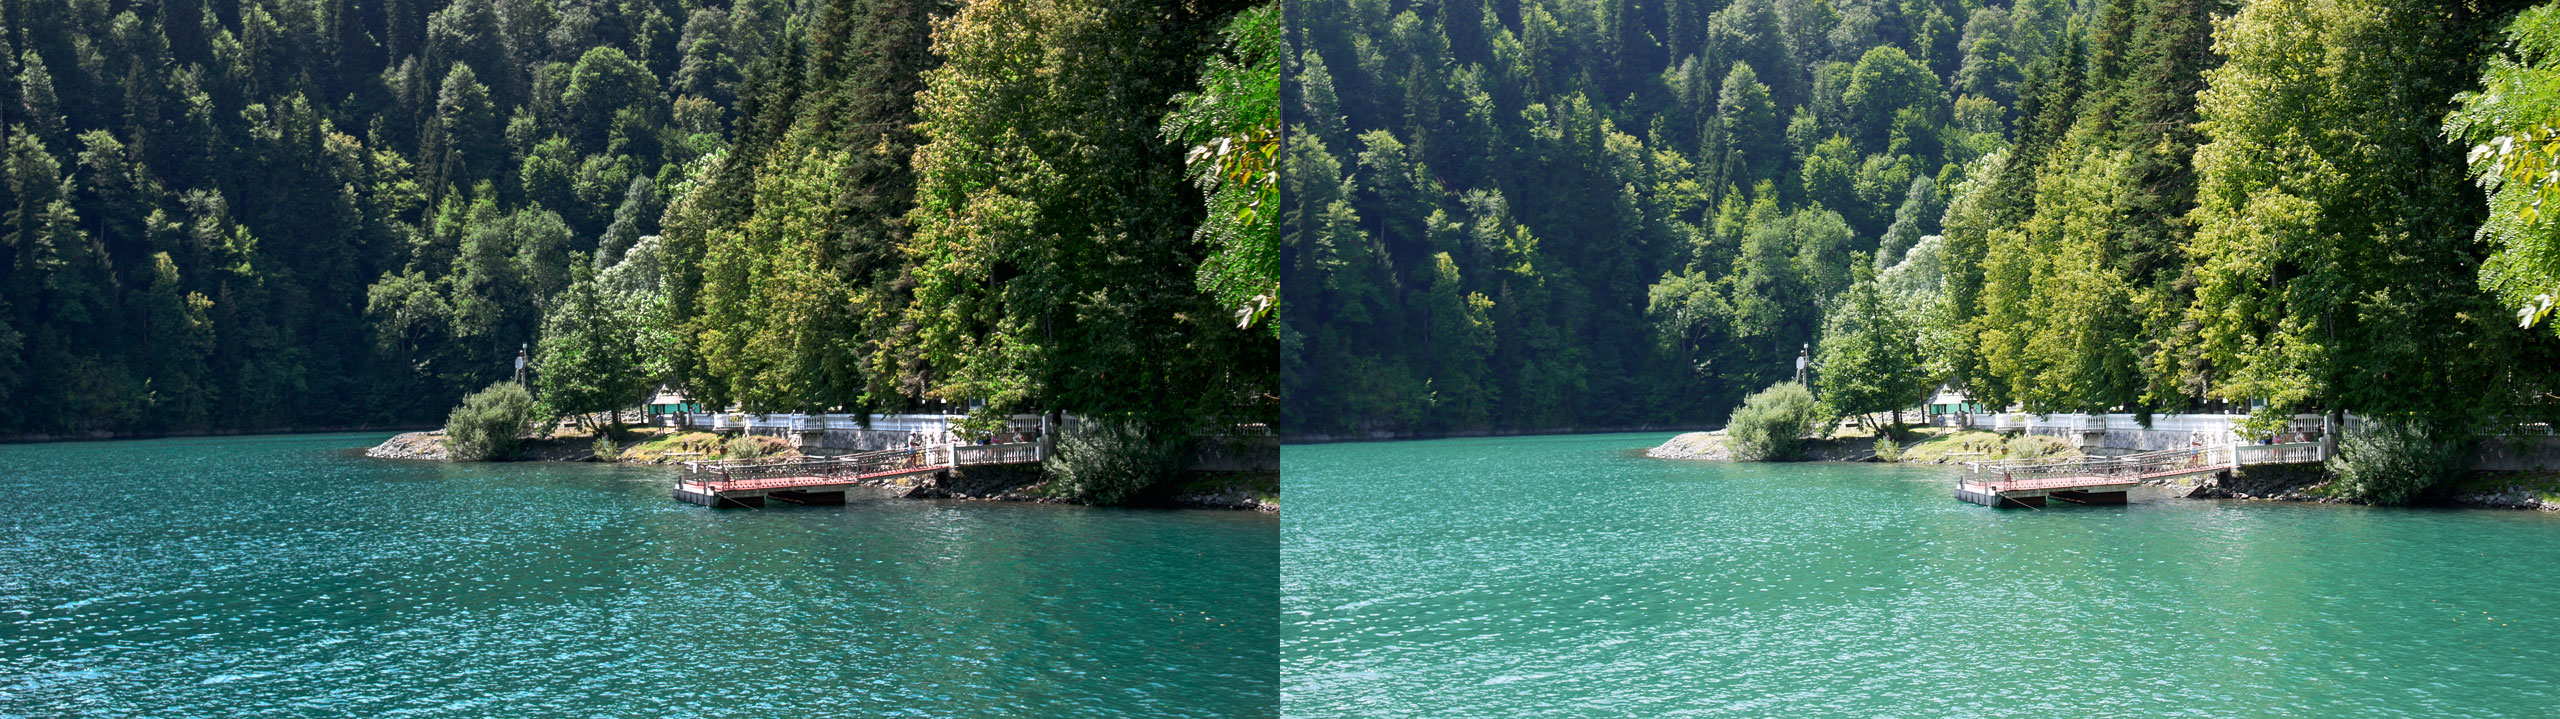 Озеро "Рица". В левой части RAW файл обработанный PPW, в правой JPG из камеры.